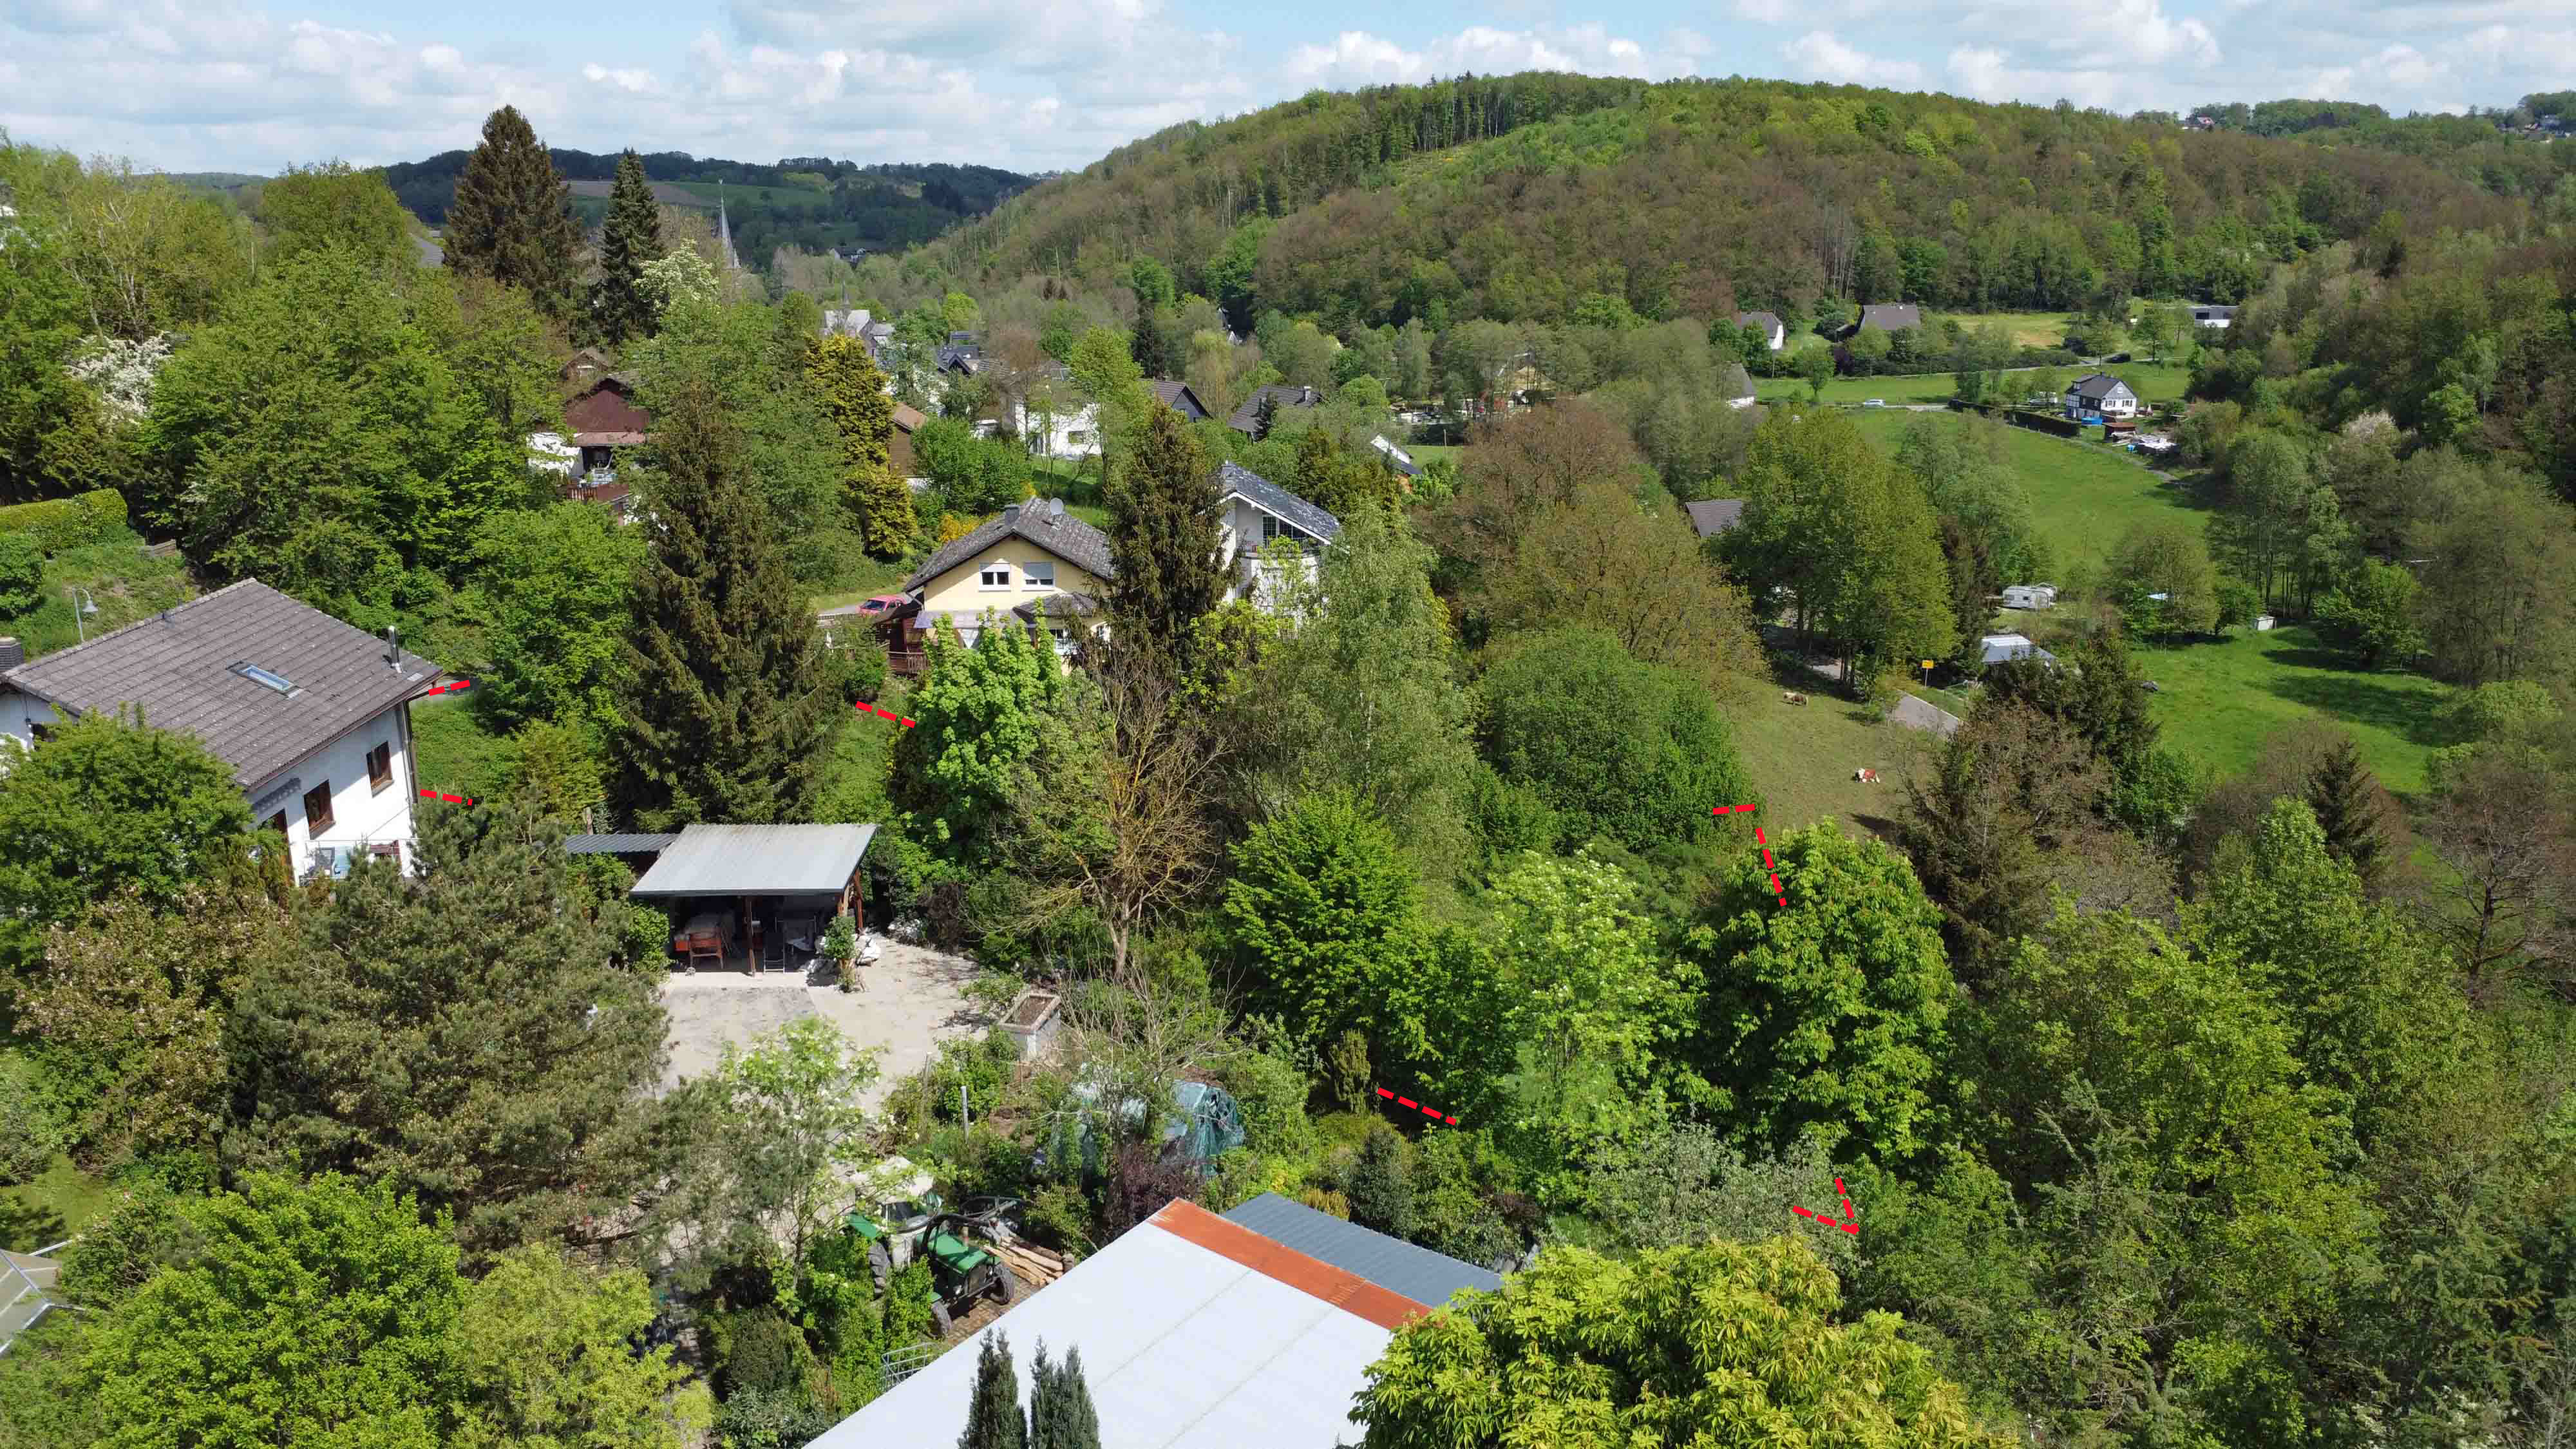 Morsbach-Holpe: Preiswertes, sofort bebaubares Baugrundstück in herrlicher Naturlage, ca. 25 m breit und ca. 50 m tief